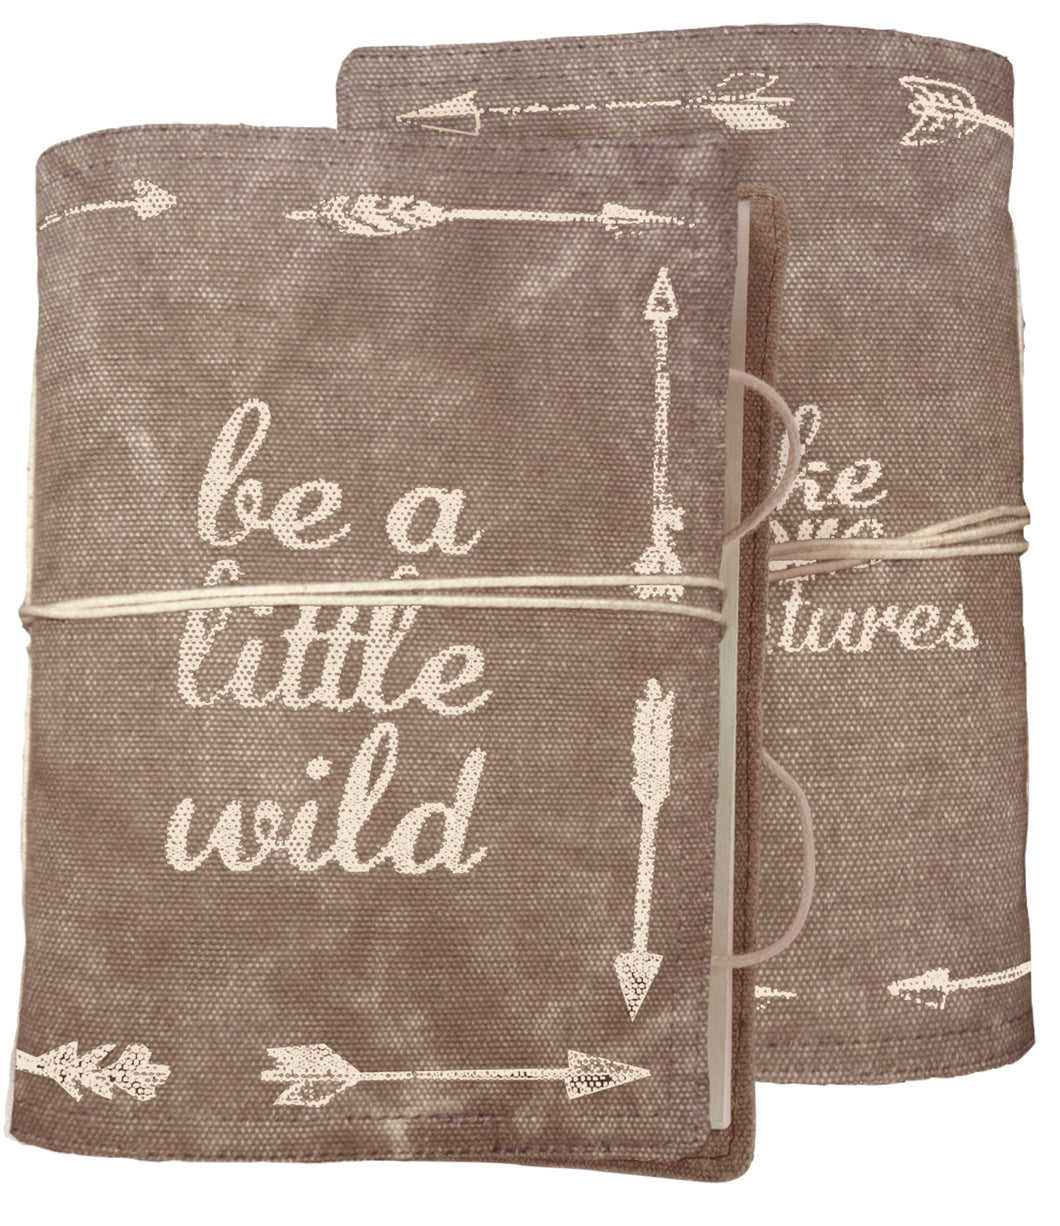 Be A Little Wild Journal